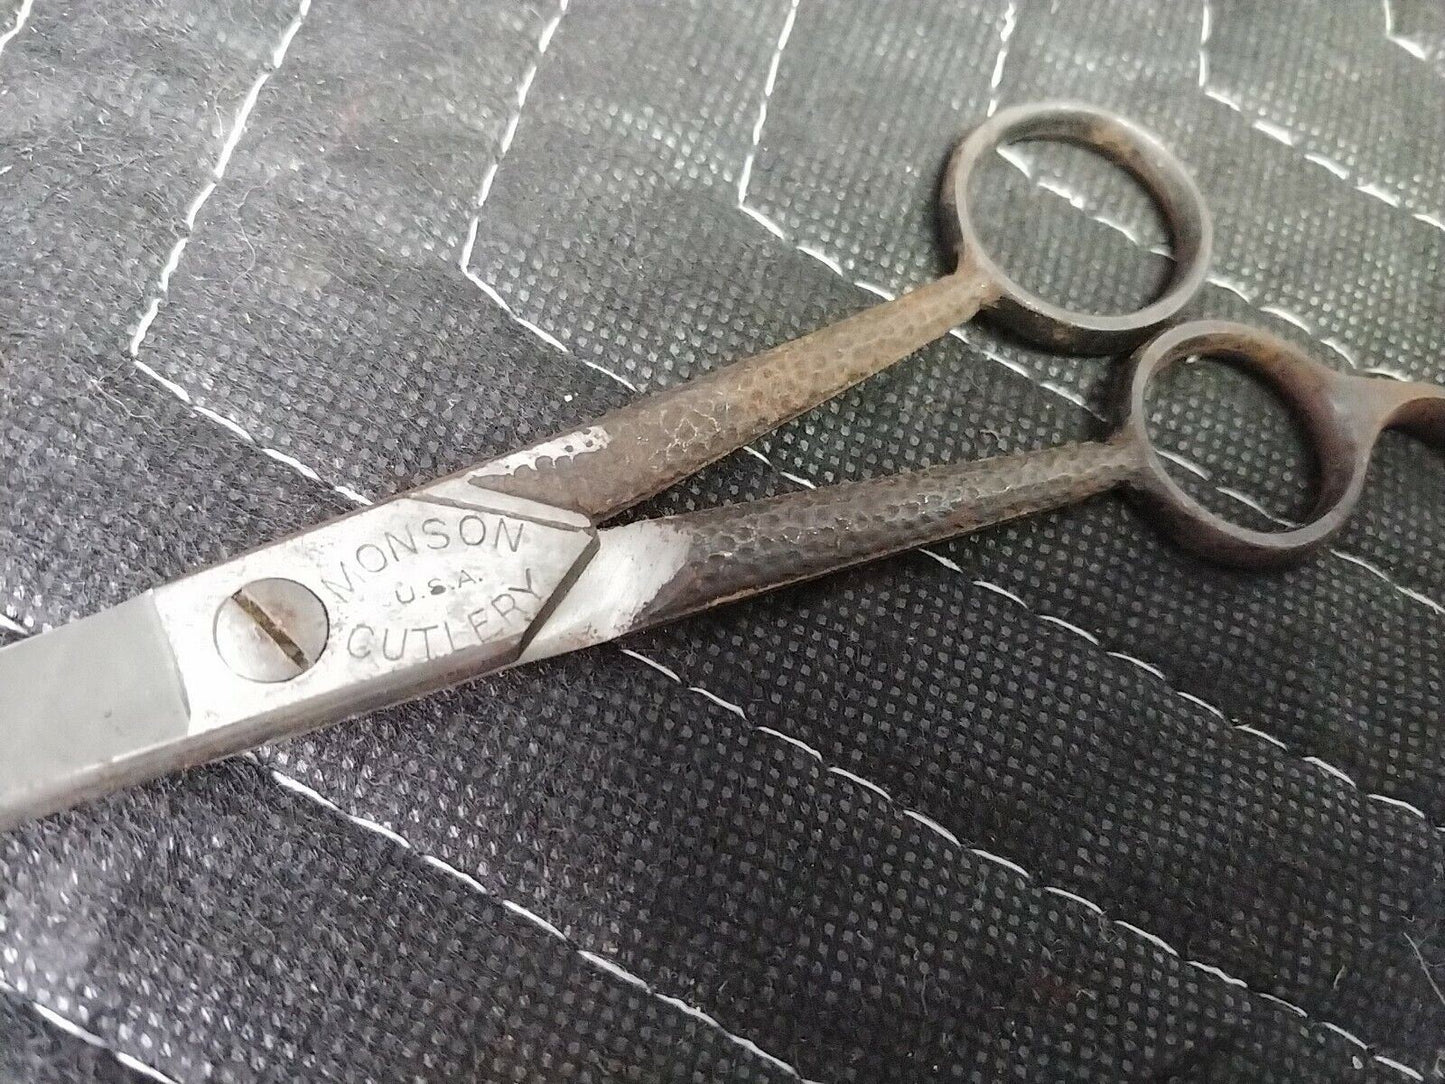 Monson Cutlery Shears Scissors